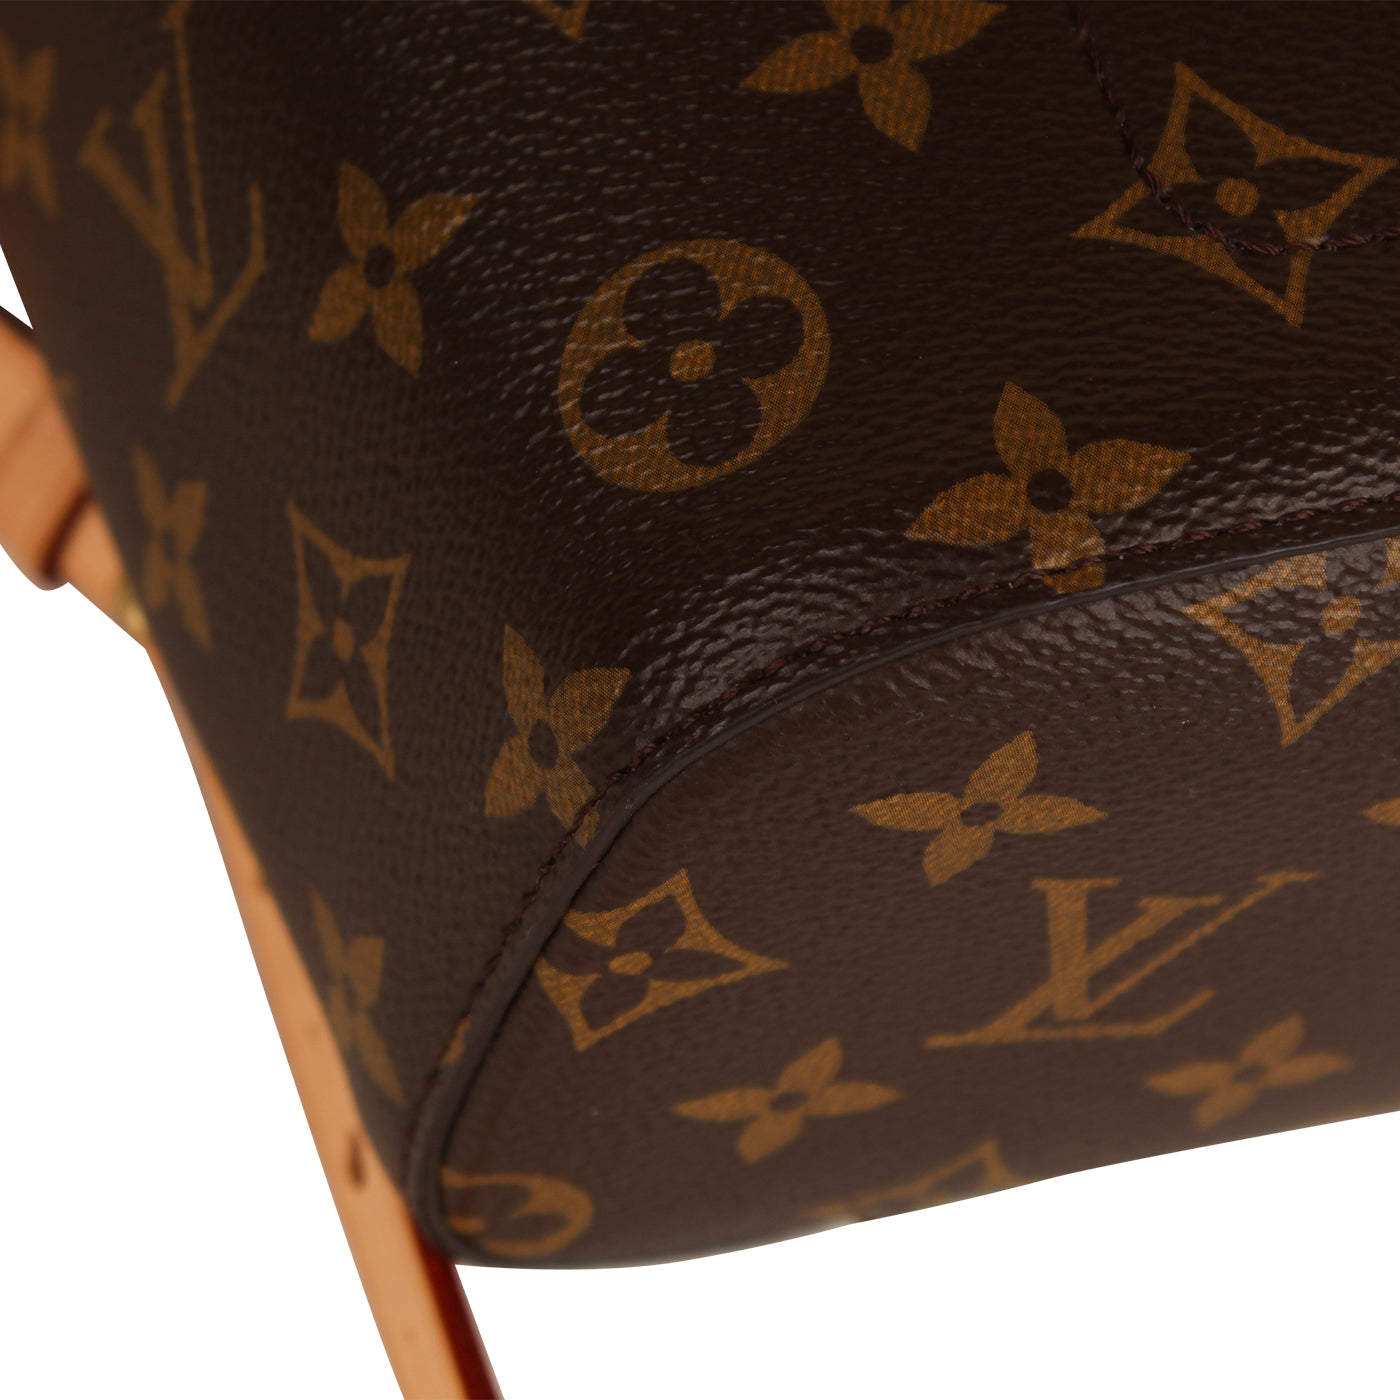 Louis Vuitton, Bags, Authentic Louis Vuitton Montsouris Mm Backpack  Monogram